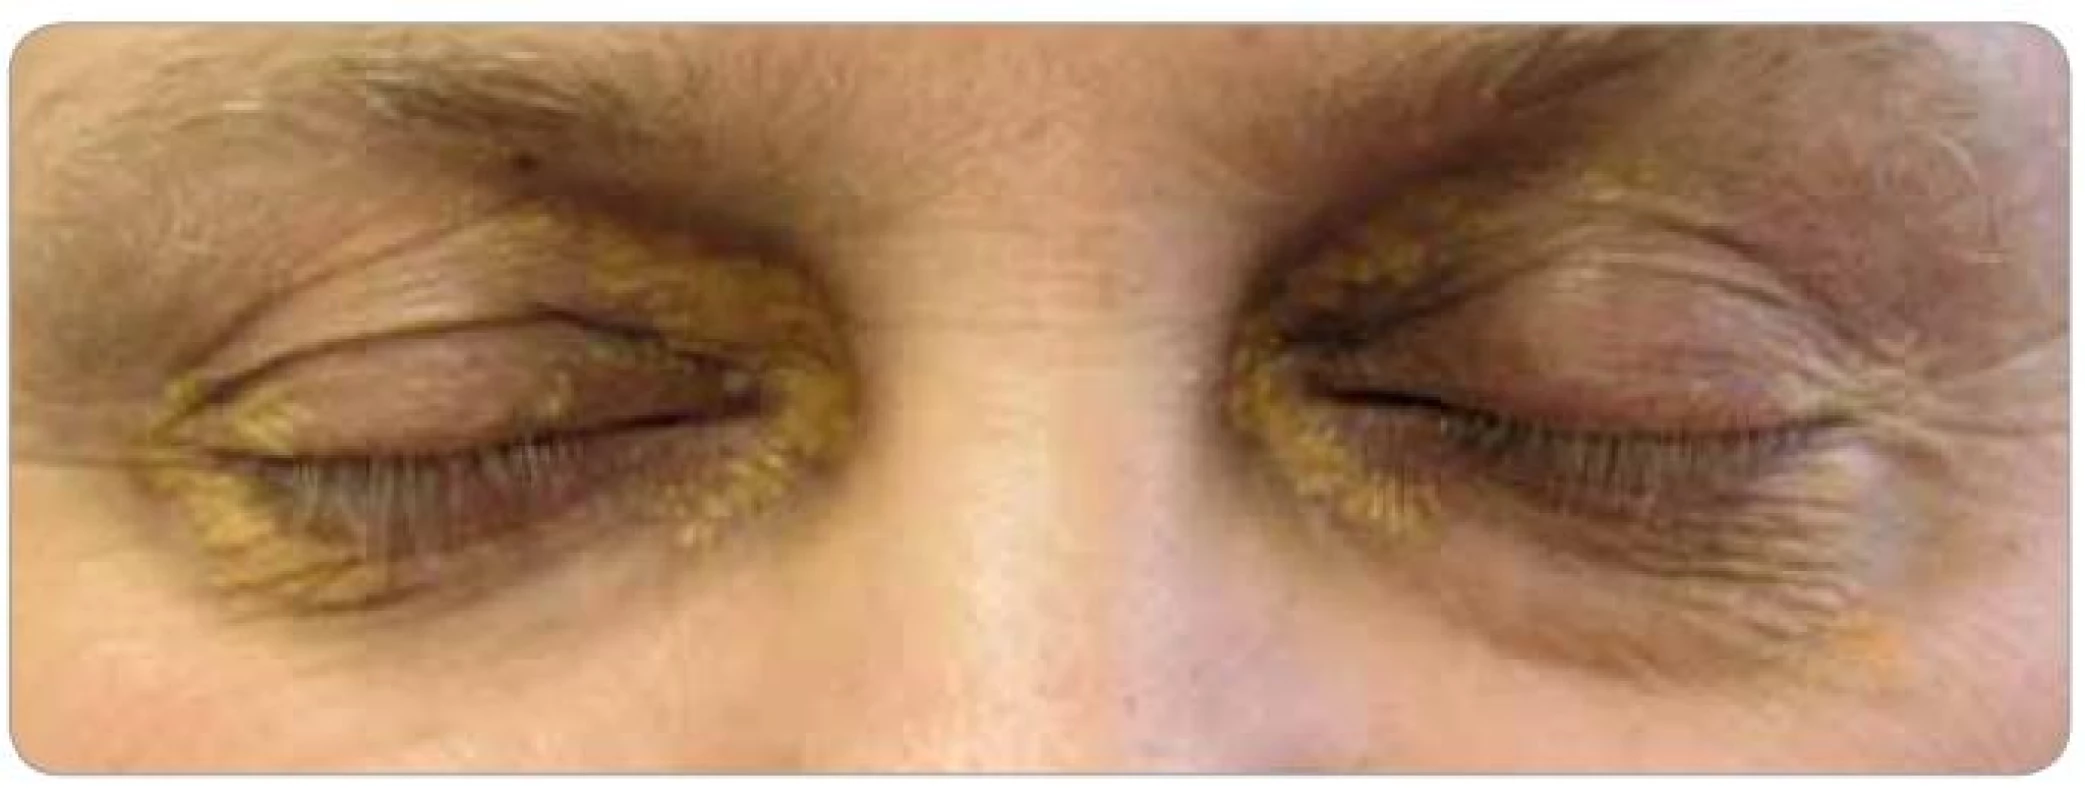 Xantalesma kolem očí pacienta, která se postupně zvětšují.